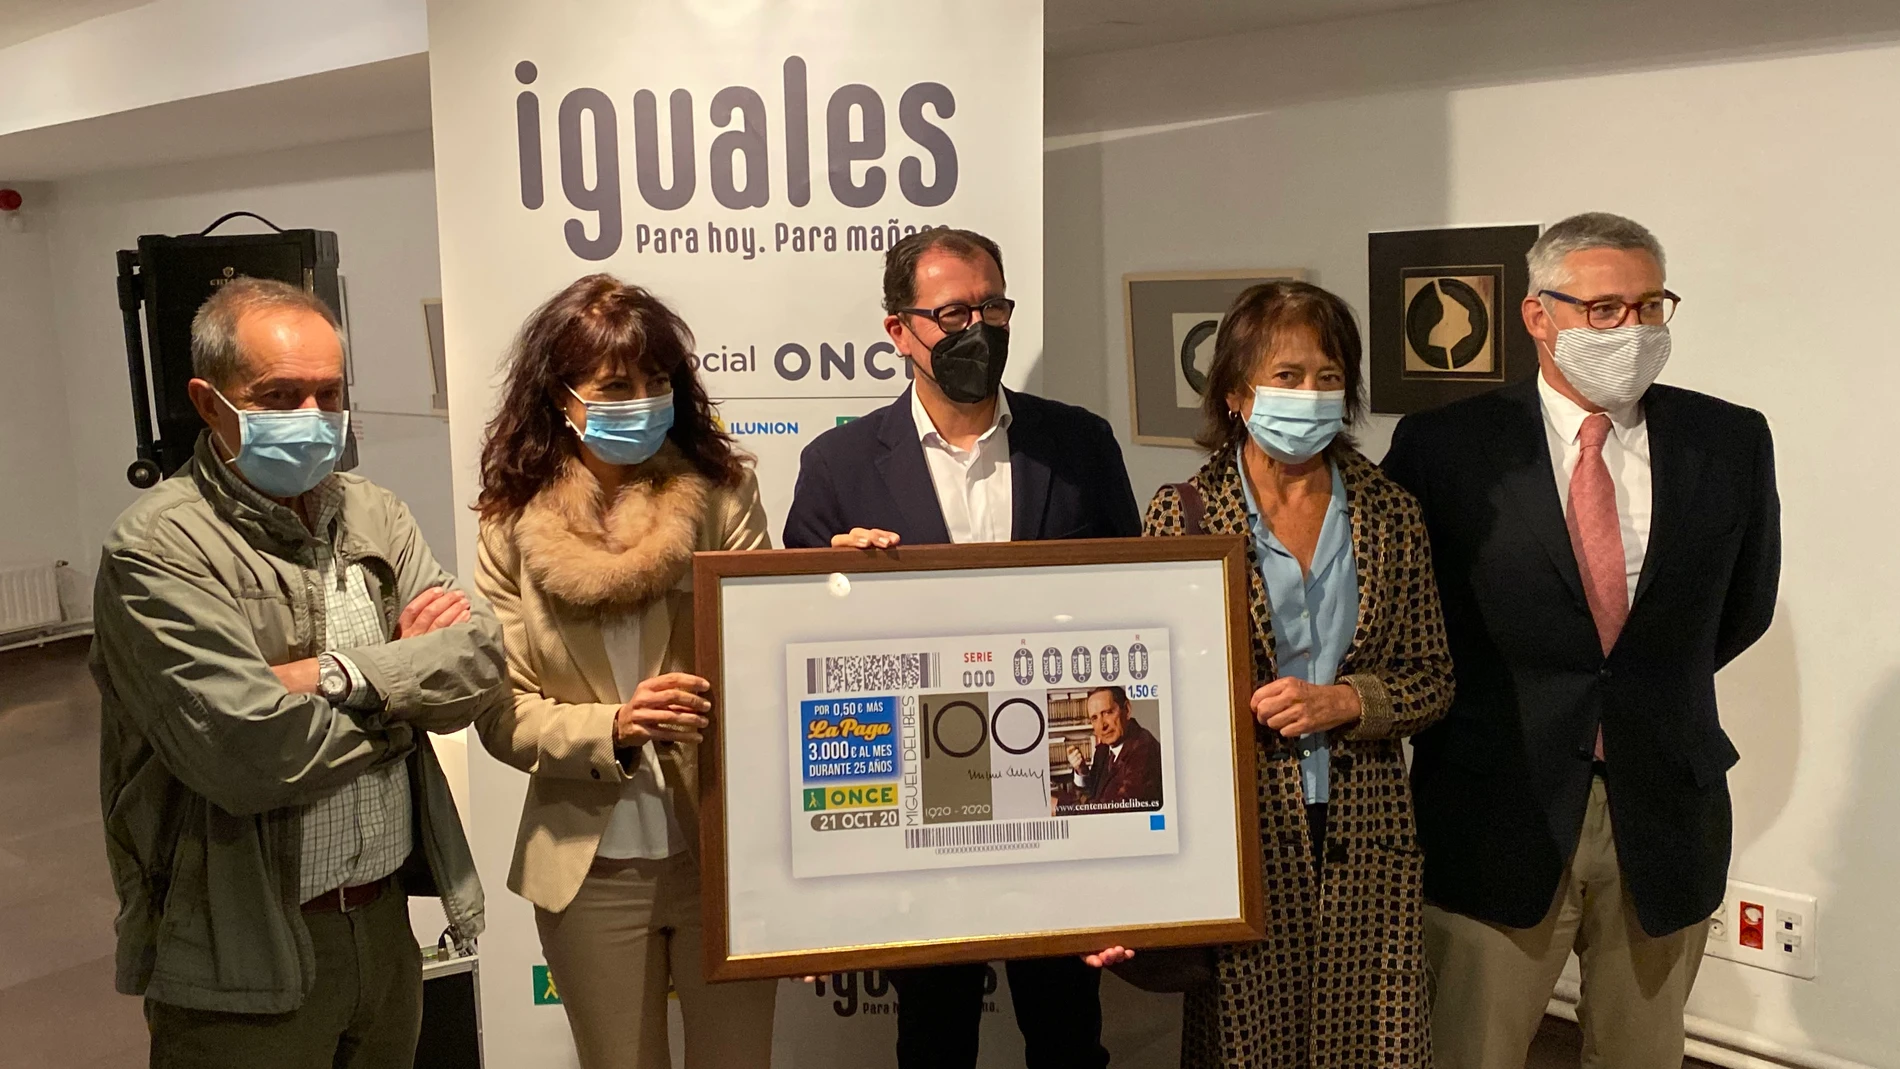 Presentación del cupón de la ONCE en honor a Miguel Delibes, en el que han participado la concejala Ana Redondo, Ismael Ismael Pérez, Elisa Delibes, y Fernando Zamácola